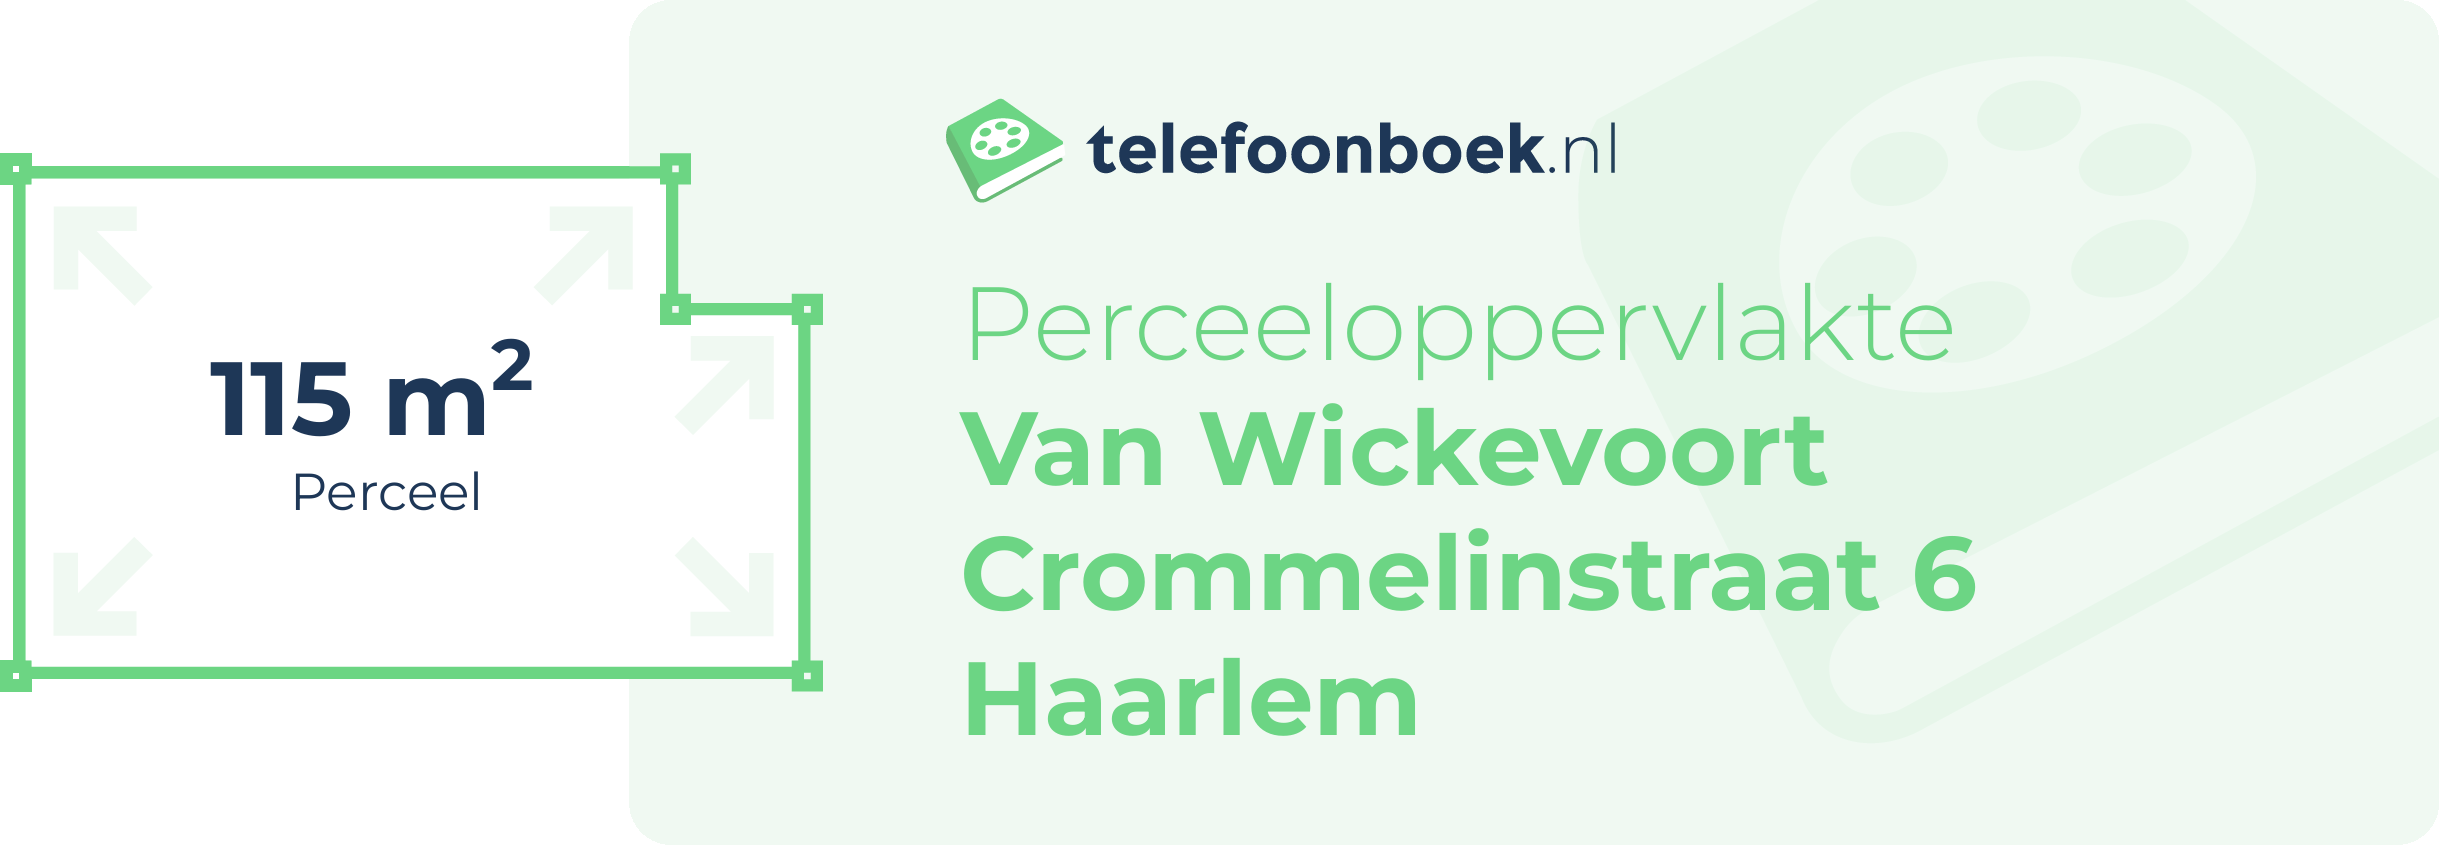 Perceeloppervlakte Van Wickevoort Crommelinstraat 6 Haarlem